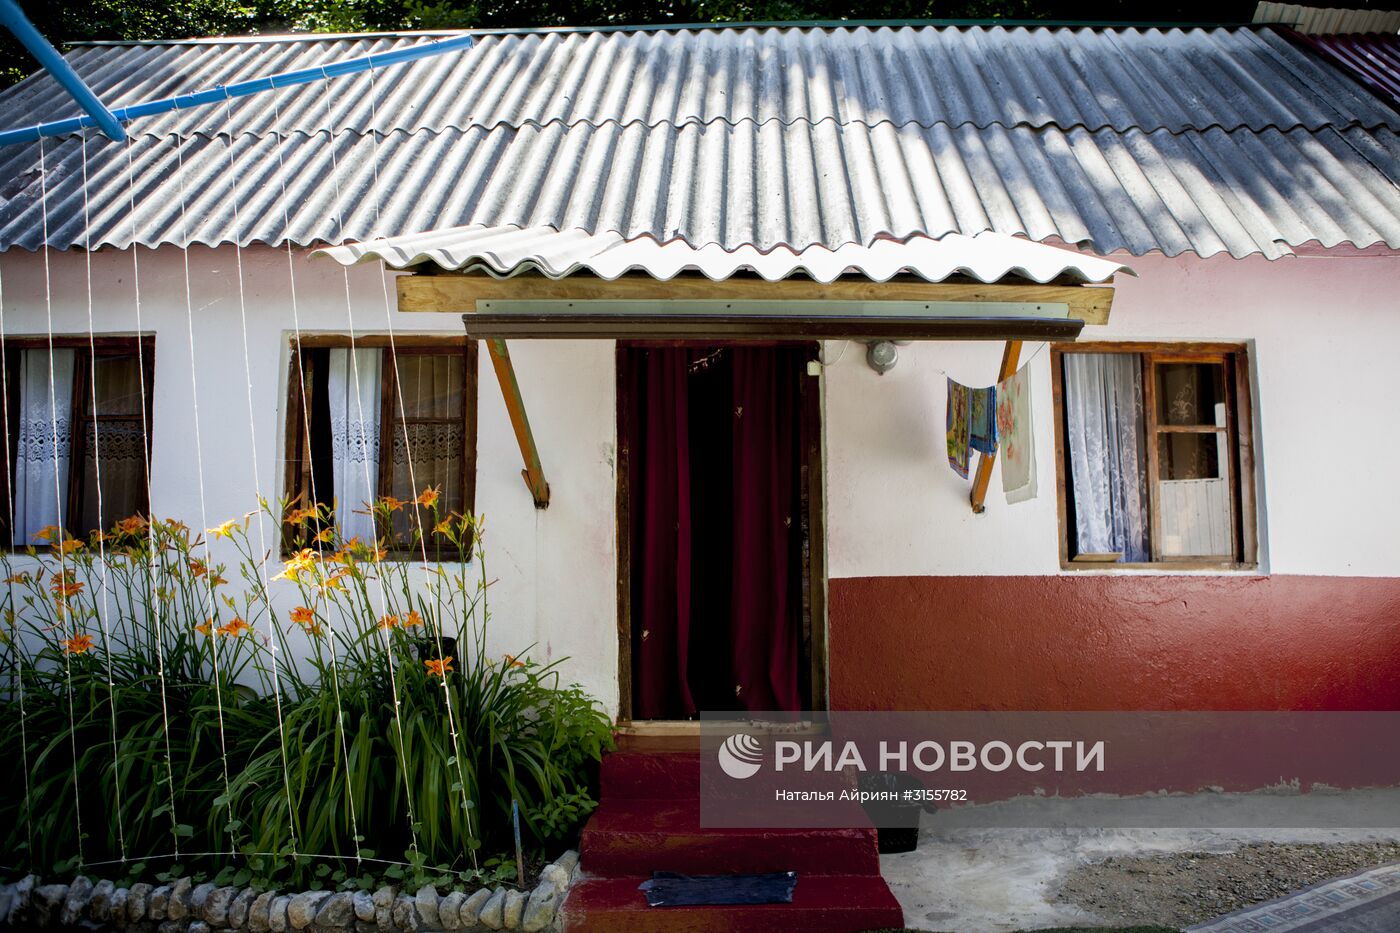 Высокогорный оздоровительный комплекс "Нагутни" в Южной Осетии